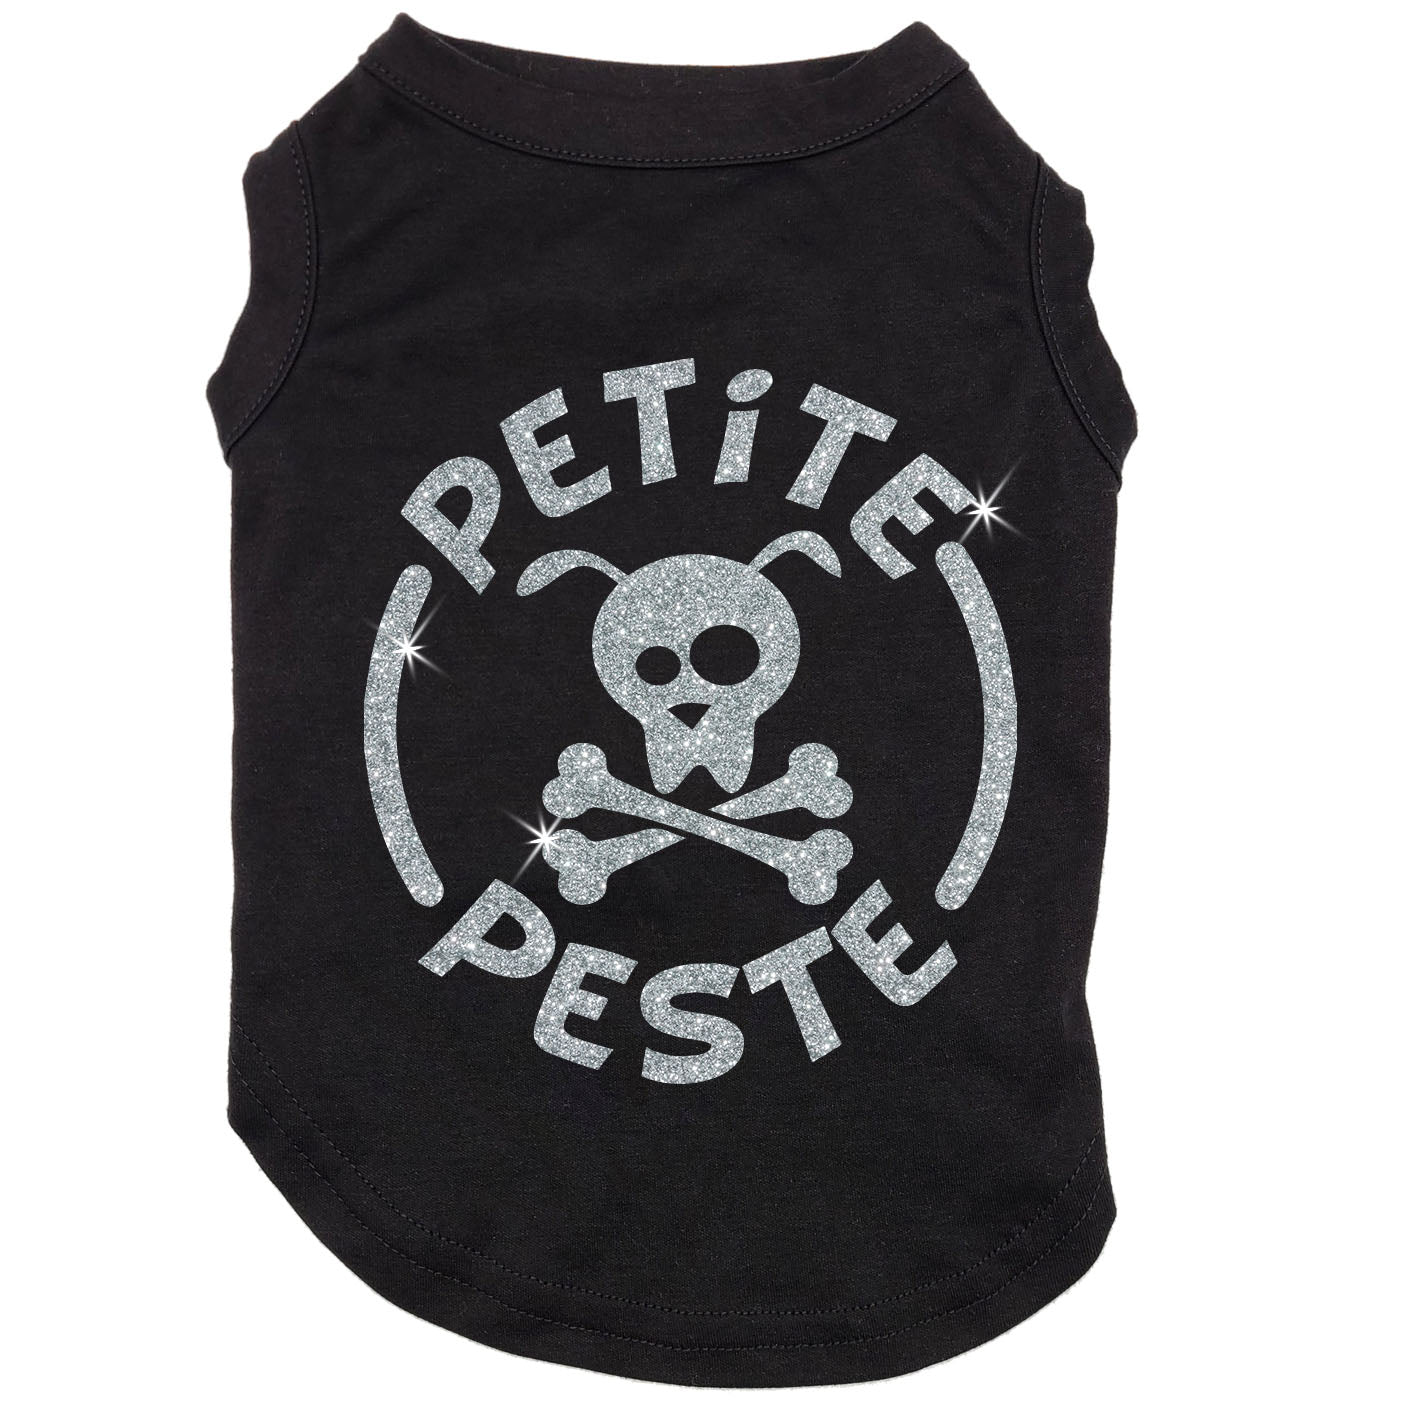 Petite peste, t-shirt pour chien